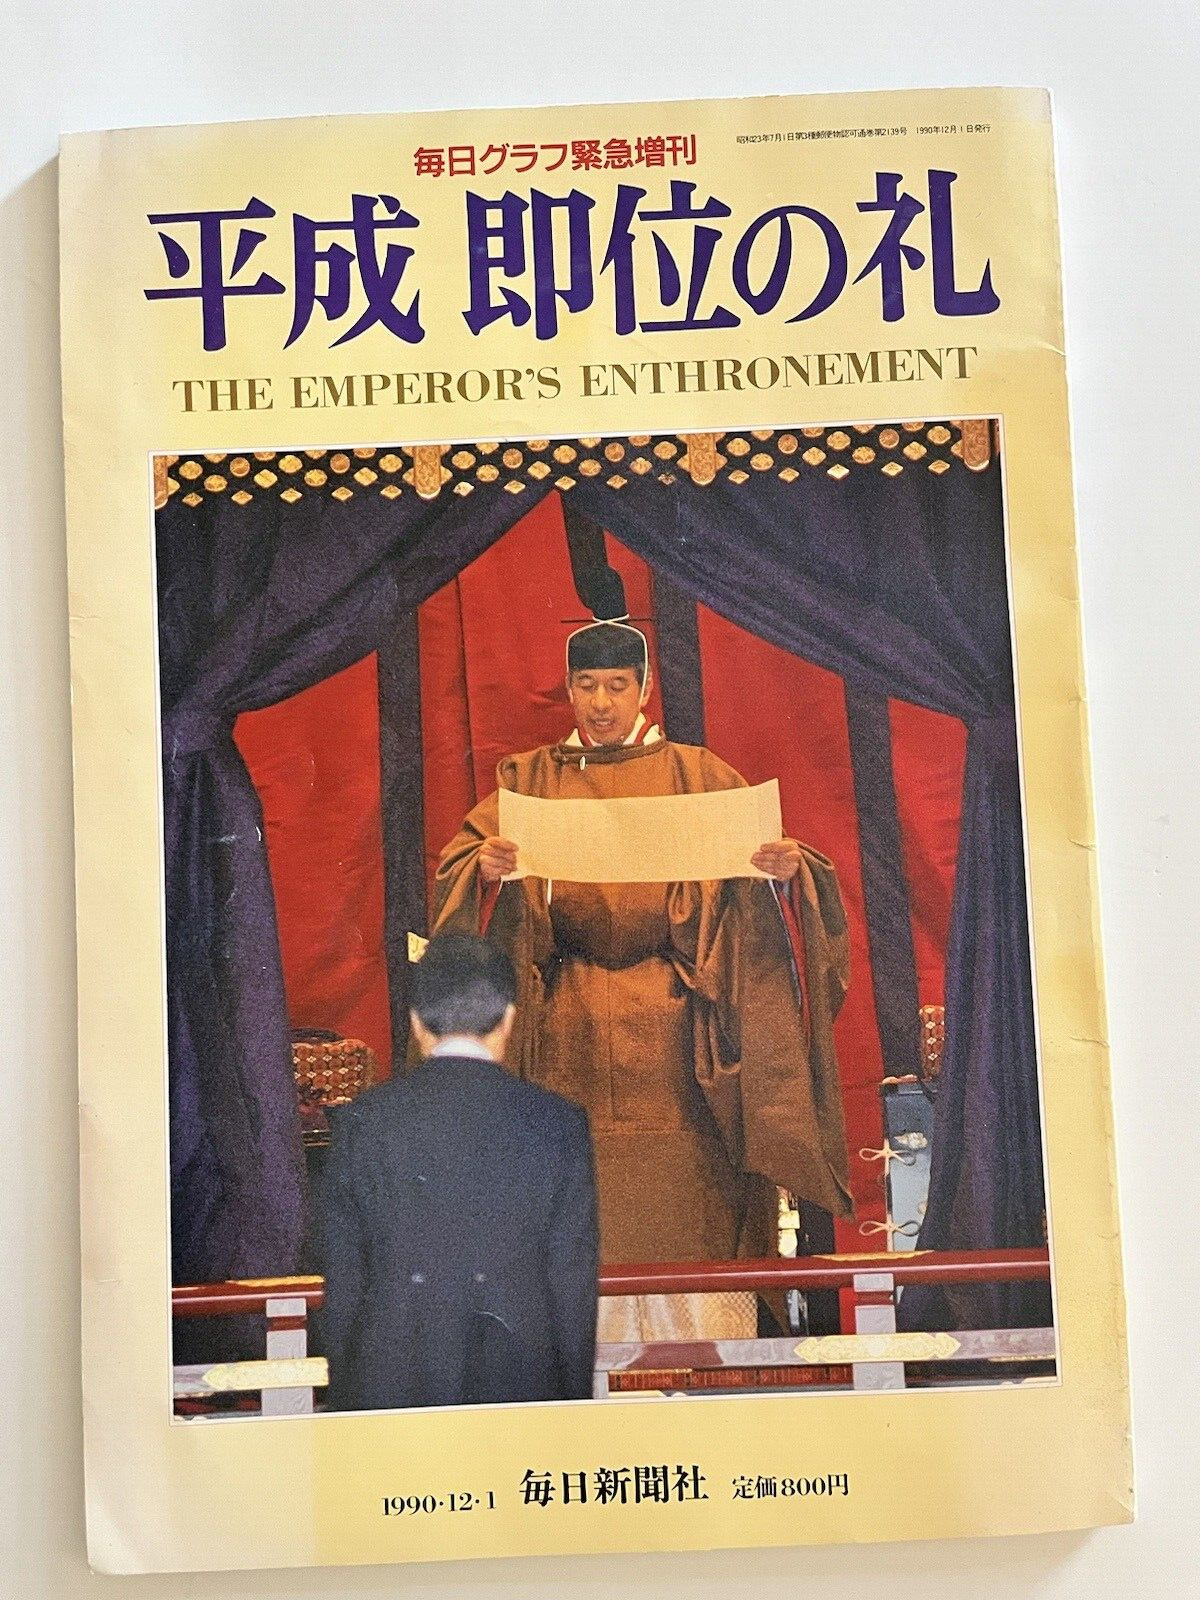 The Emperor's Enthrotment 12-01-1990 Magazine